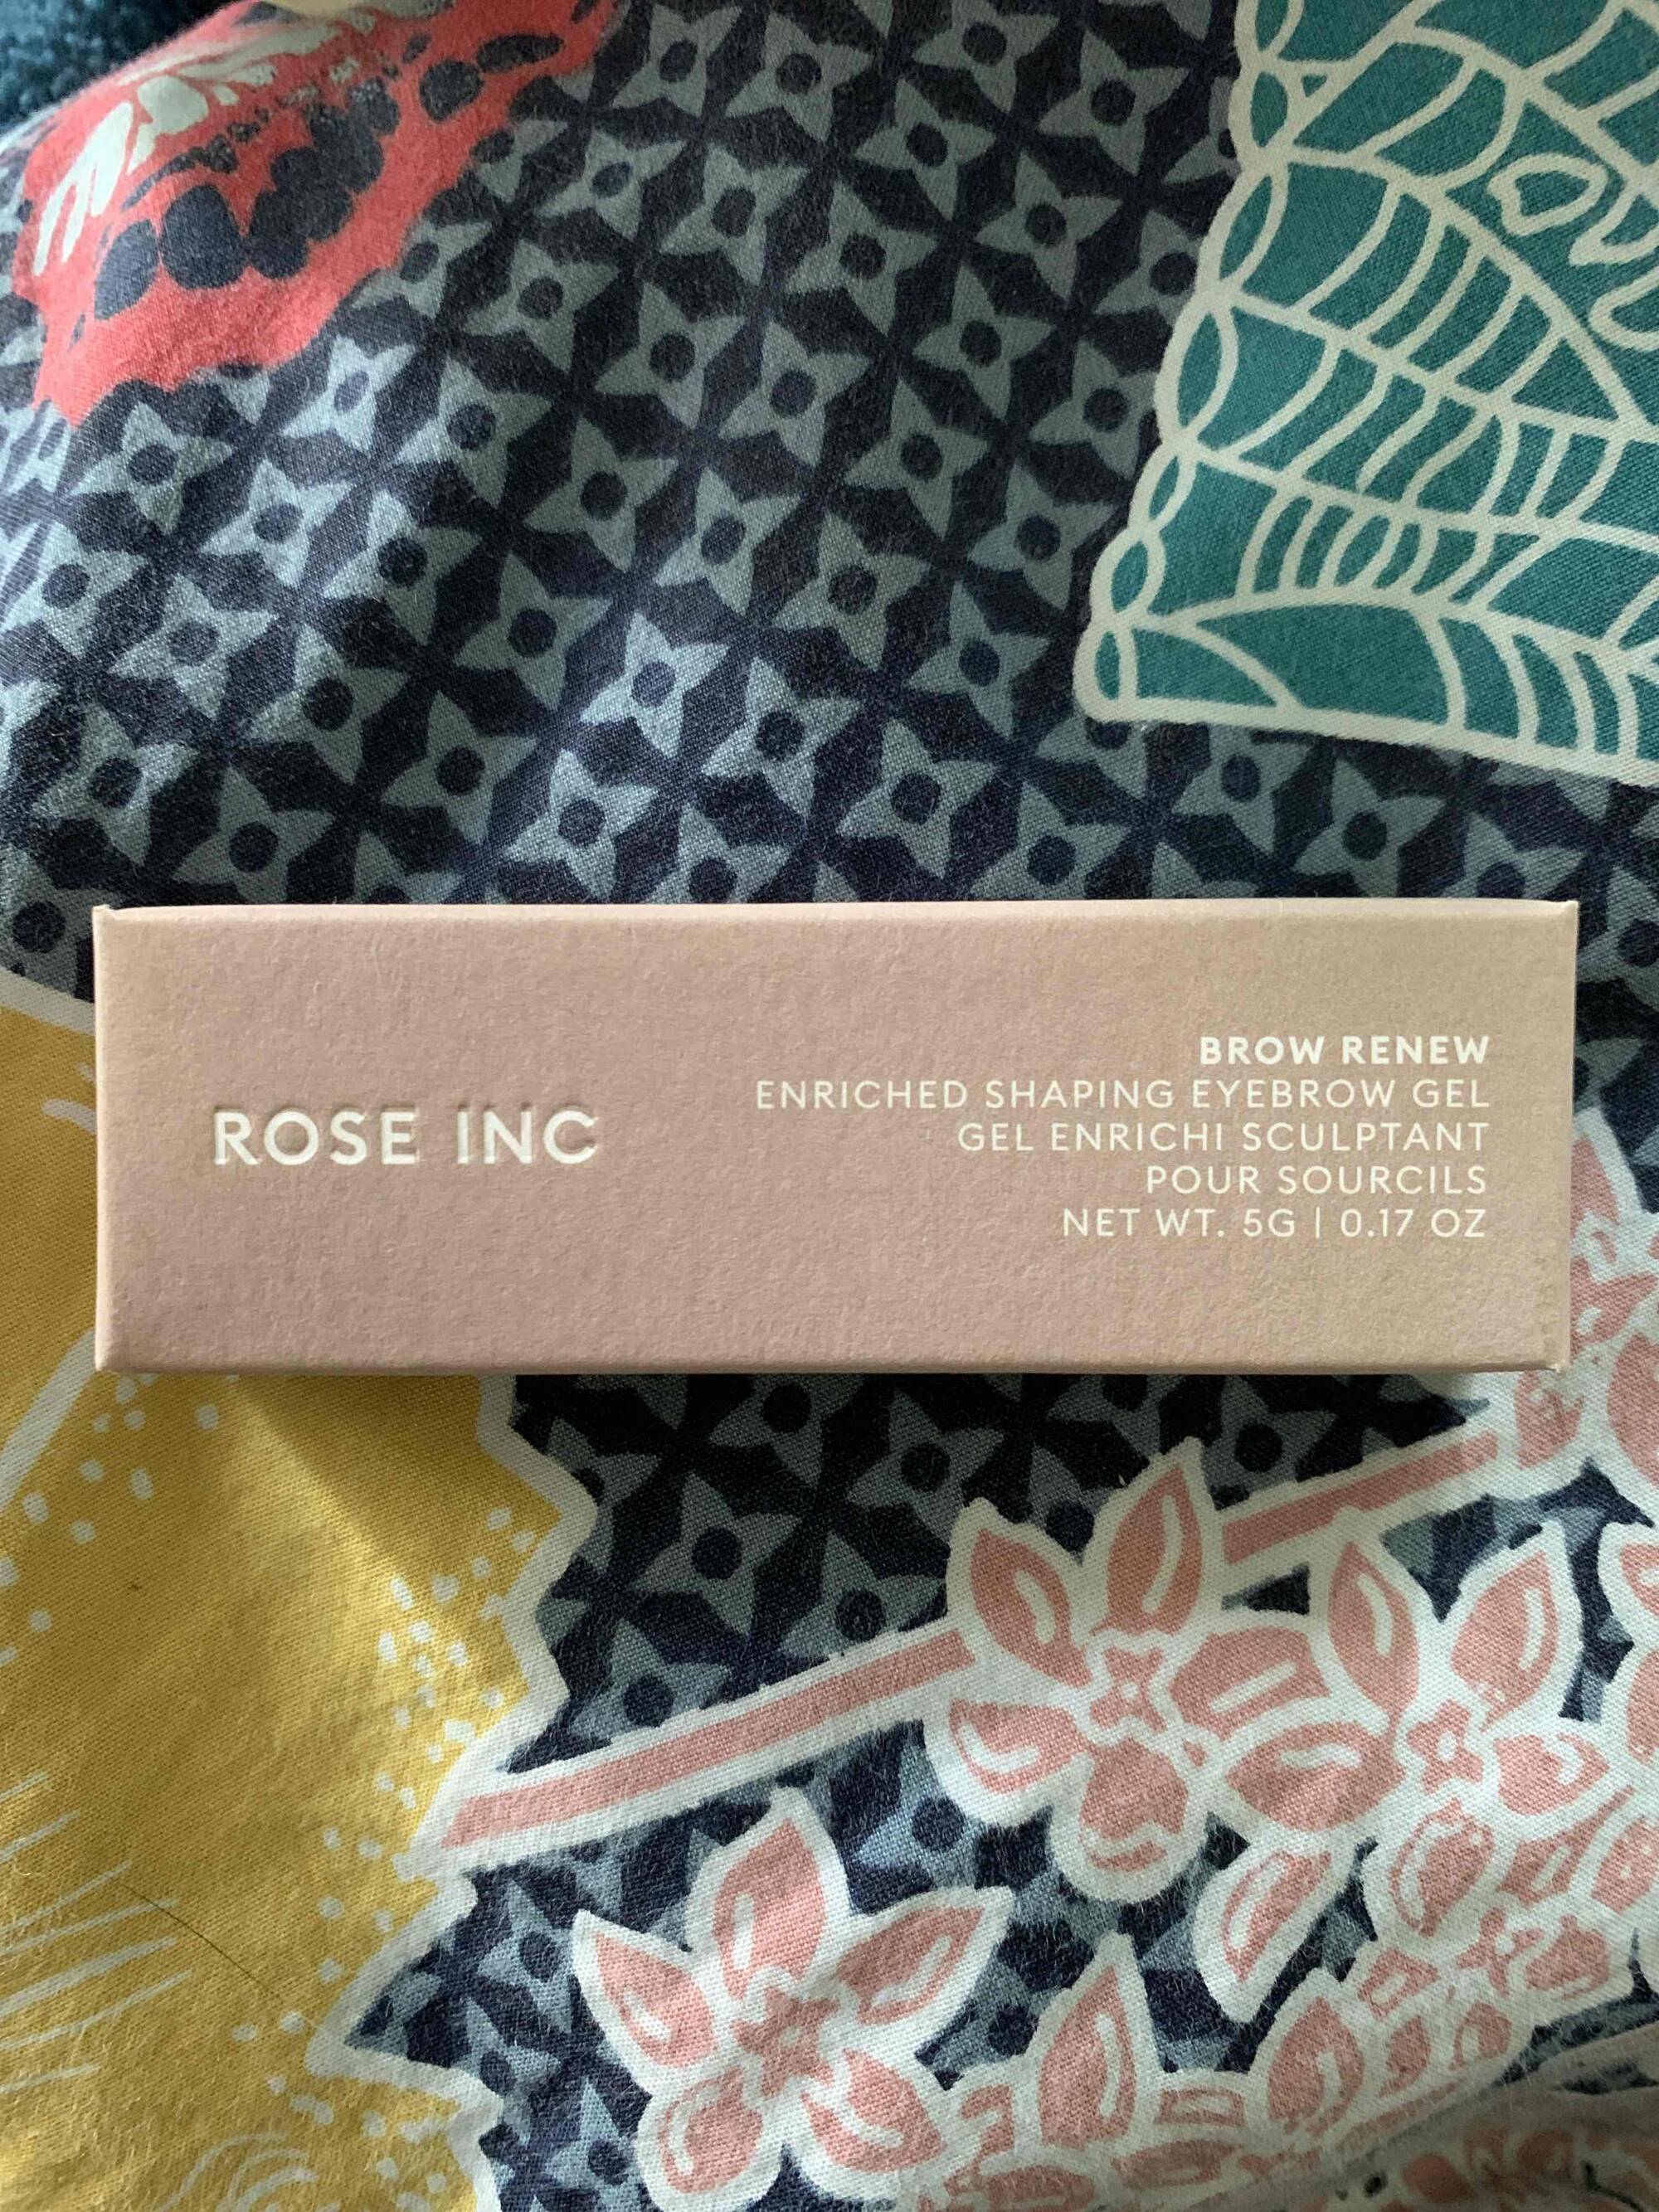 ROSE INC - Brow renew - Gel enrichi sculptant pour sourcils